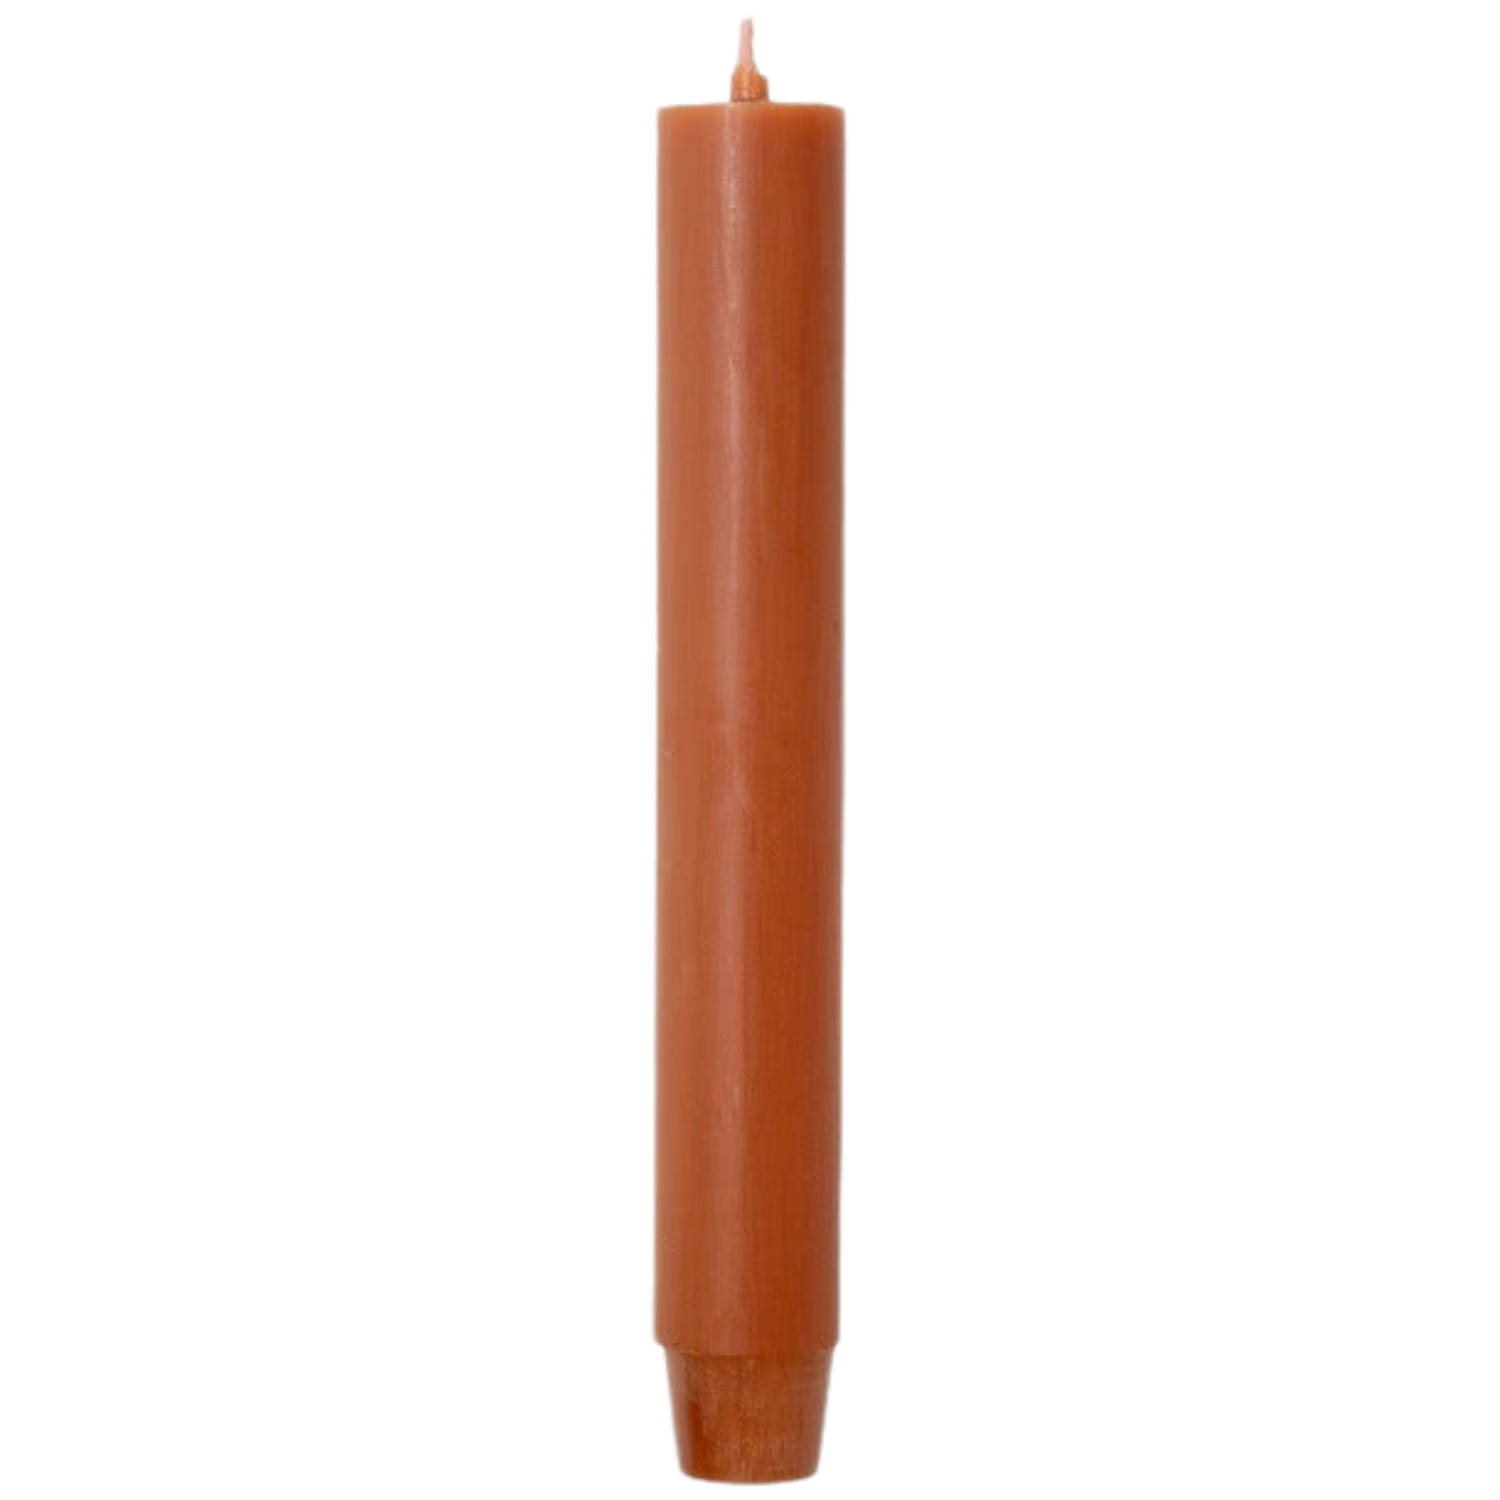 Rustik Lys Dinerkaarsen Kaarsen Roest Oranje Doos 20 stuks 2.6 x 18 cm